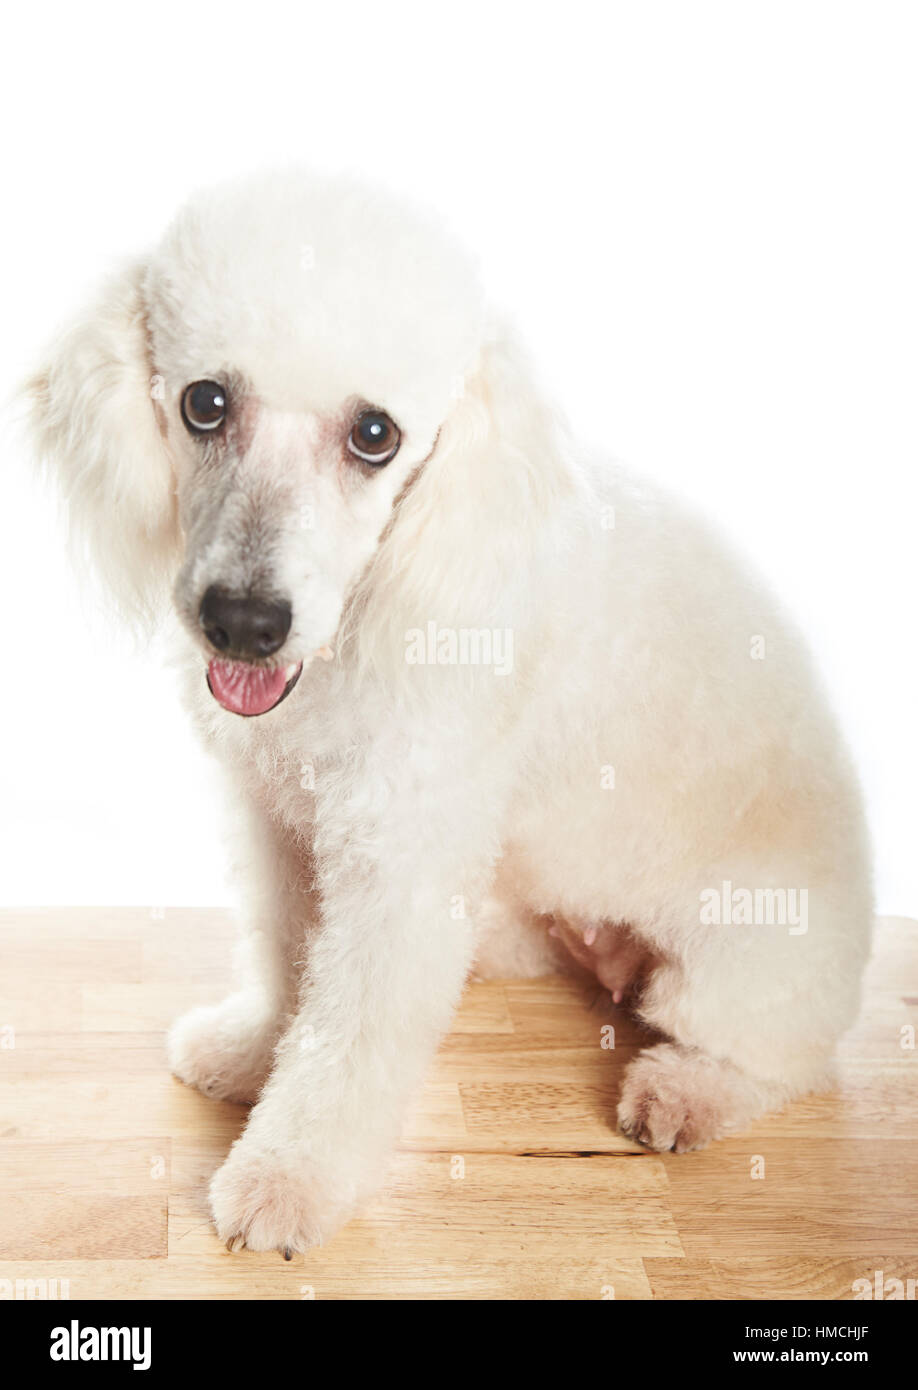 female white french poodle dog sitting on table Stock Photo